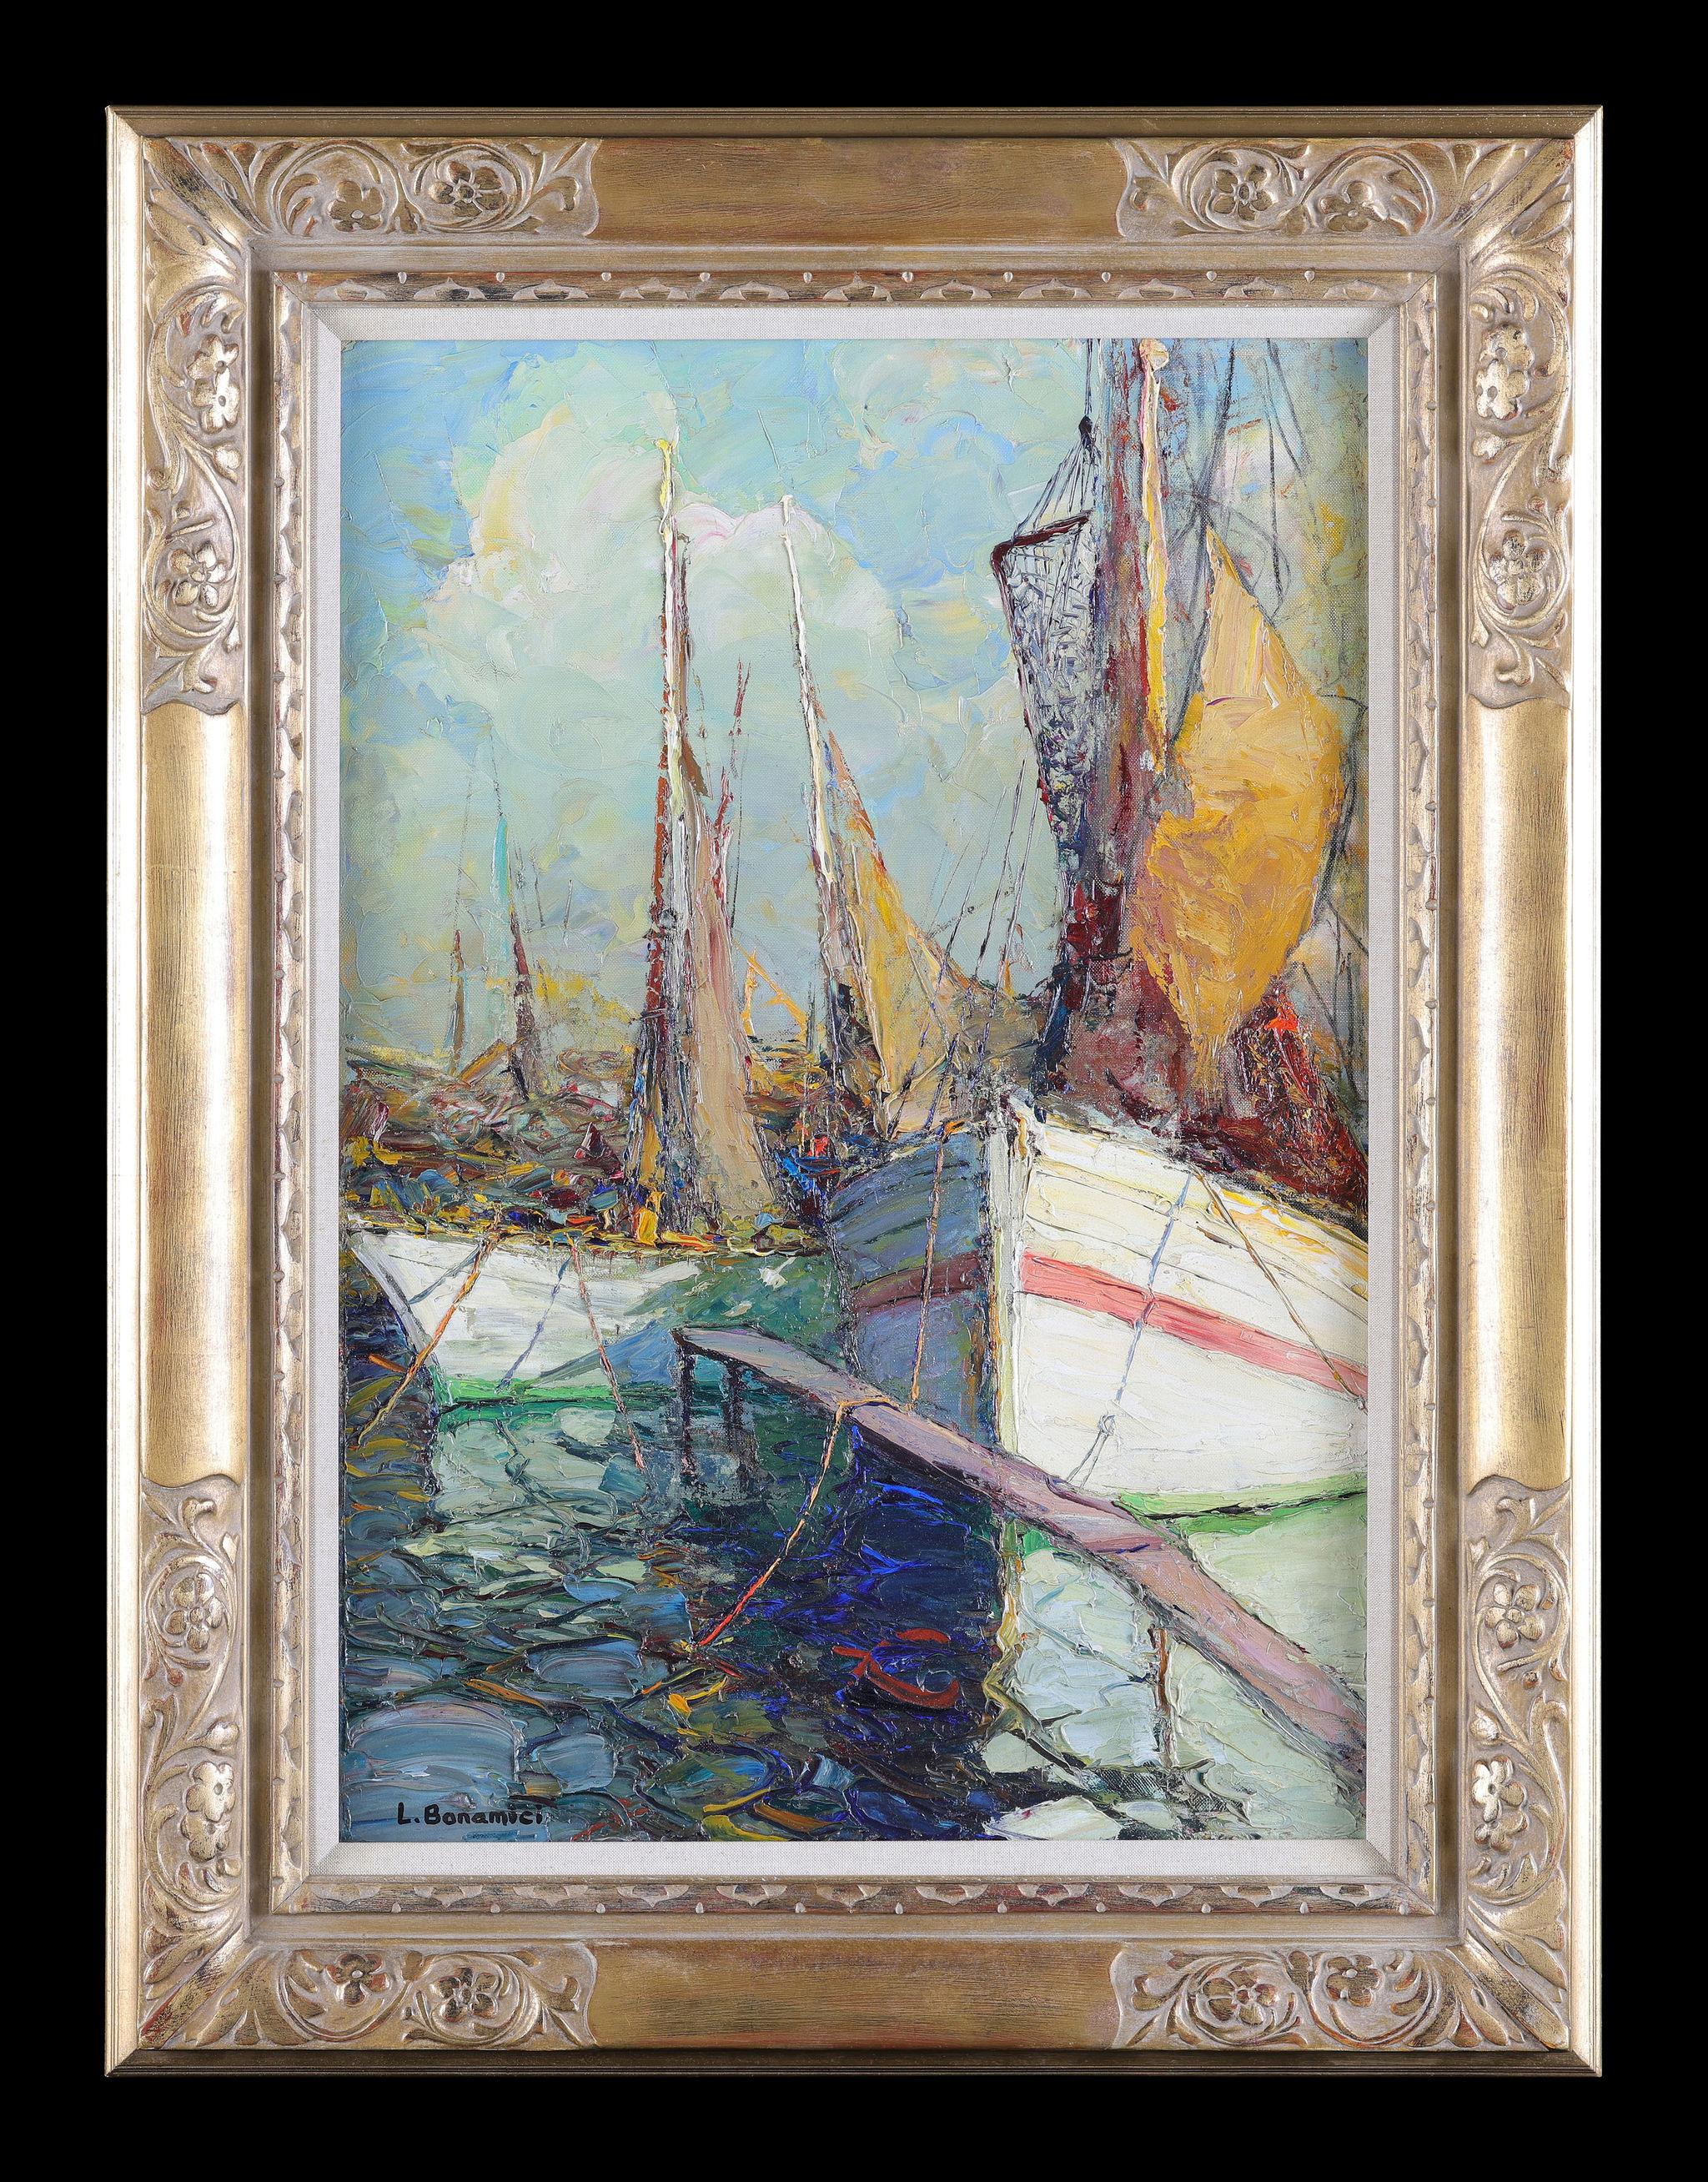 Landscape Painting Louis Bonamici - Voiliers au port